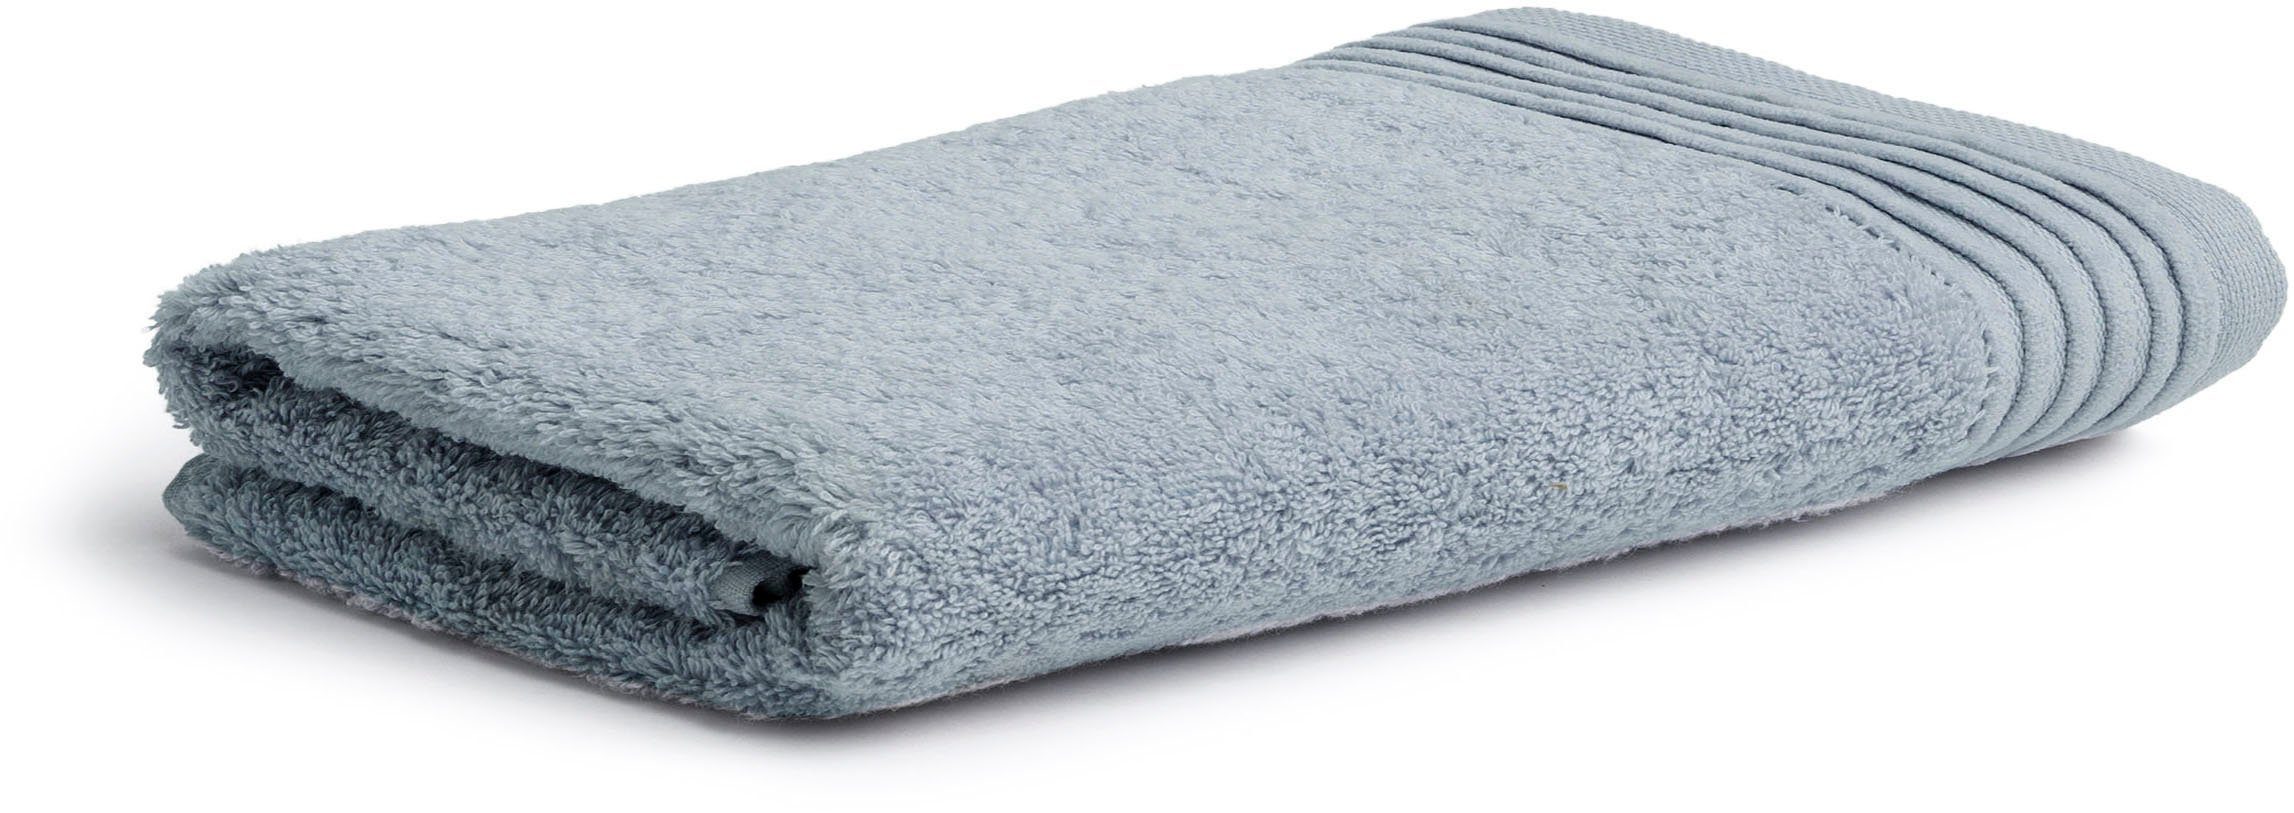 Günstige Möve Handtücher kaufen » Möve Handtücher SALE | OTTO | Badetücher